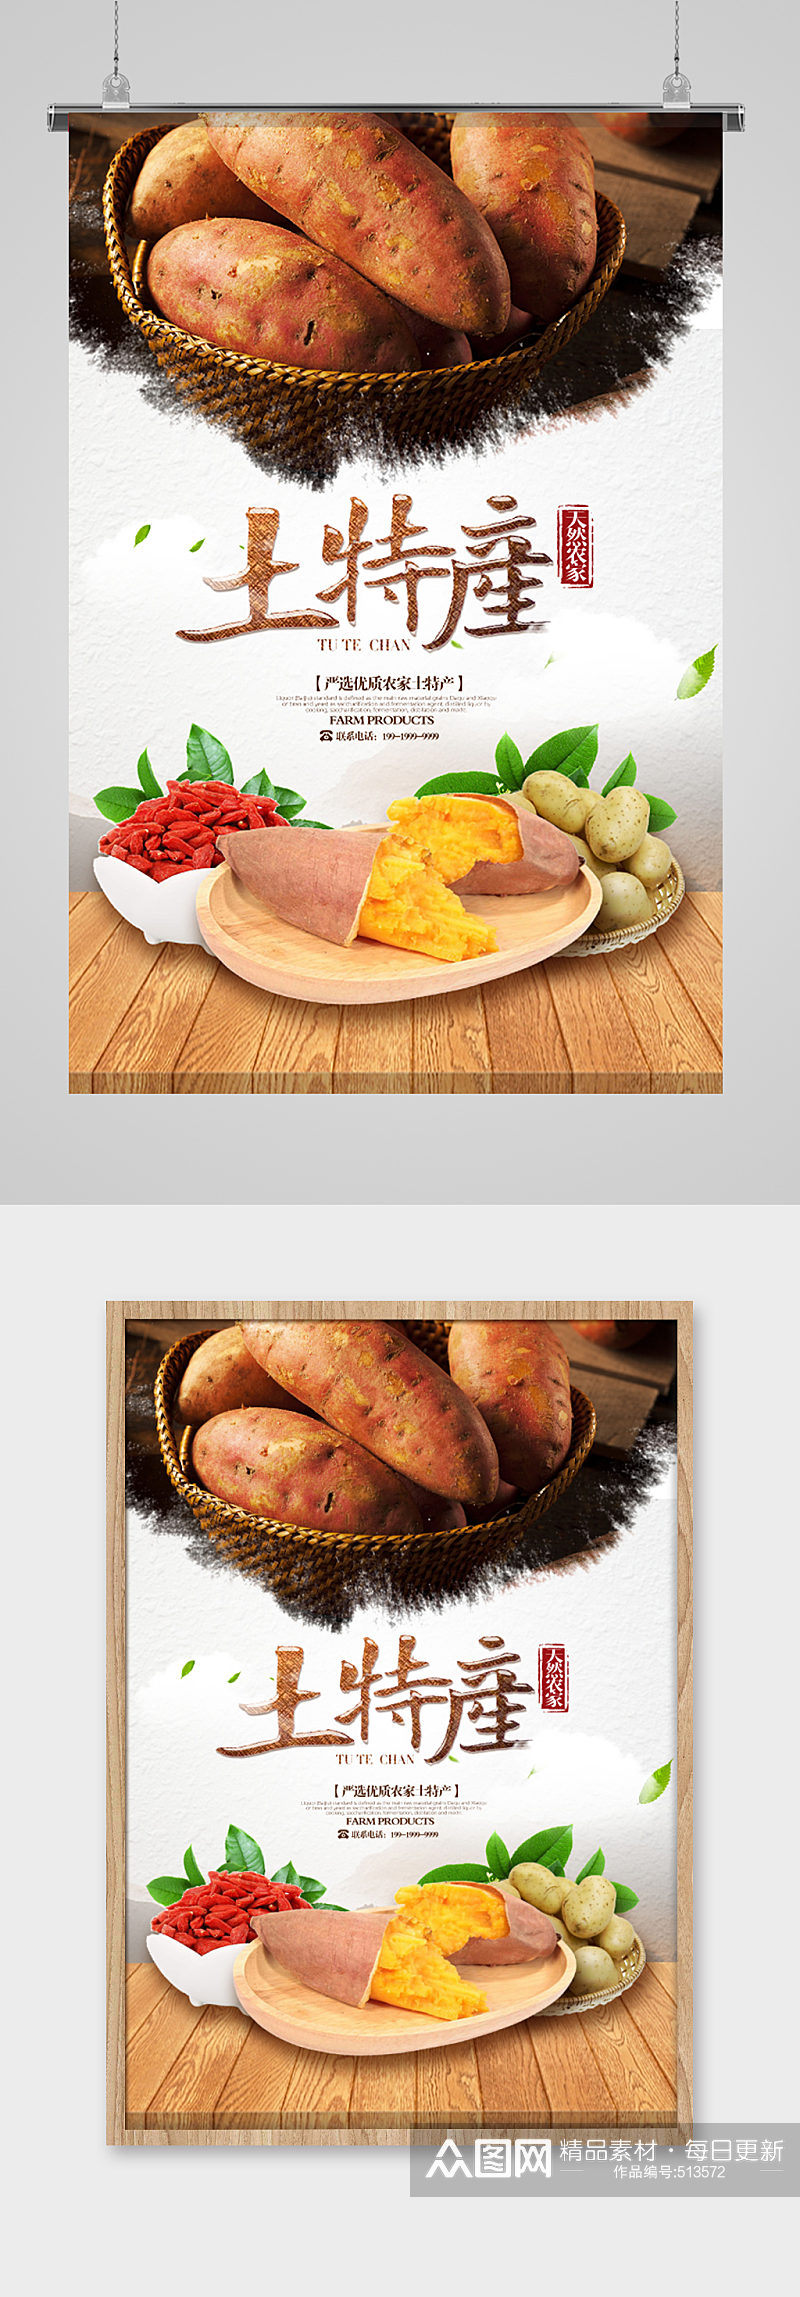 土特产番薯食品海报素材